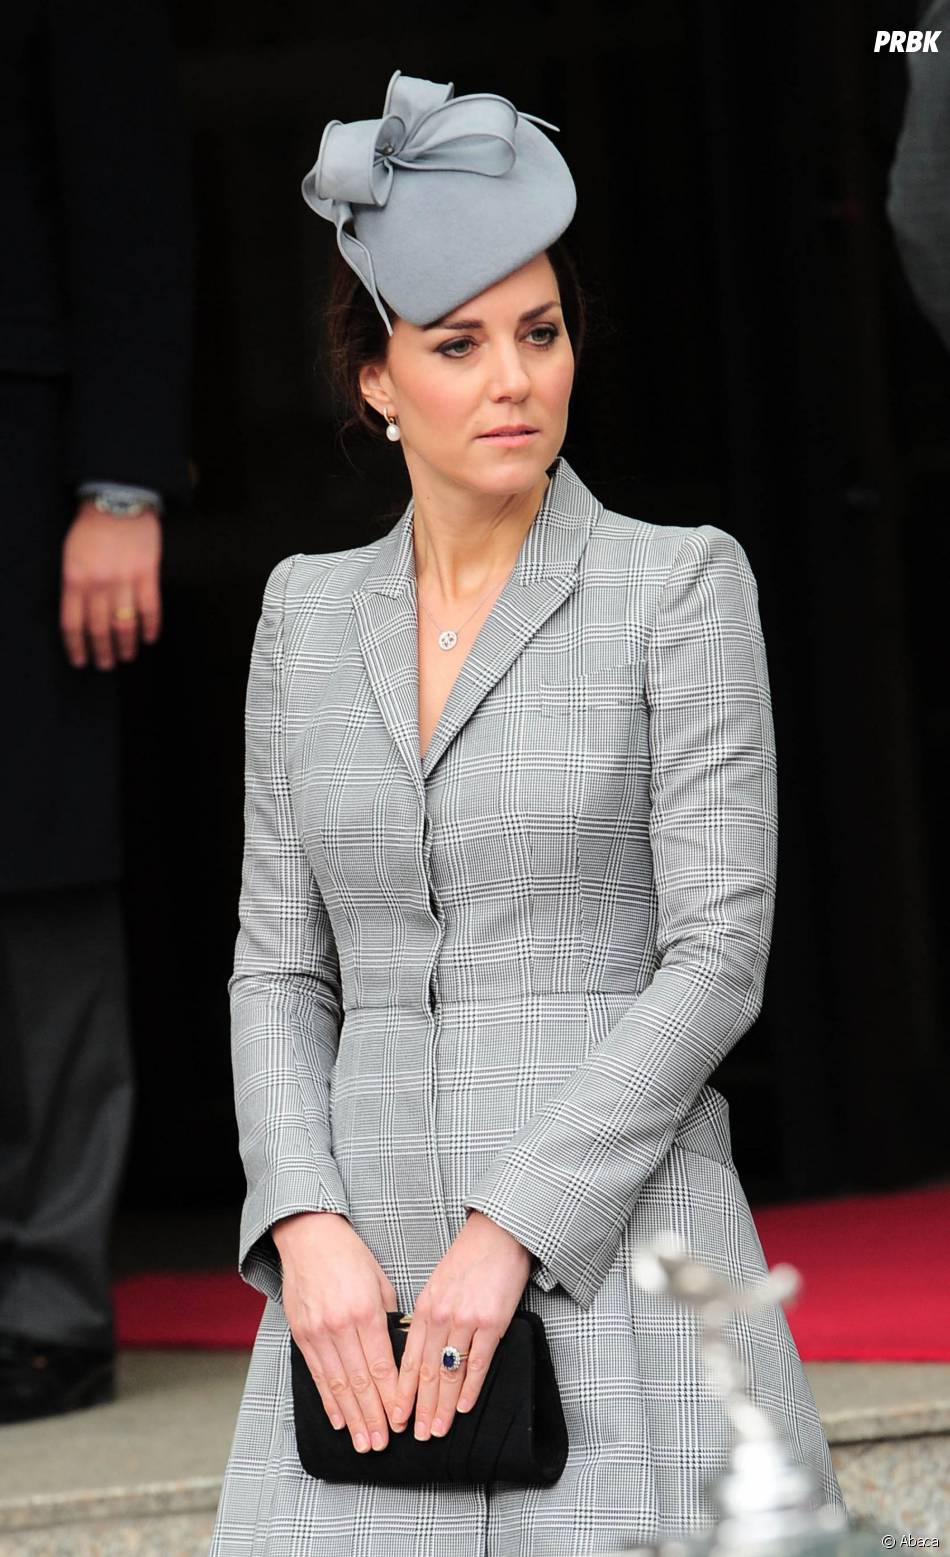  Kate Middleton enceinte et styl&amp;eacute;e pour sa premi&amp;egrave;re apparition officielle, le 21 octobre 2014 &amp;agrave; Londres 